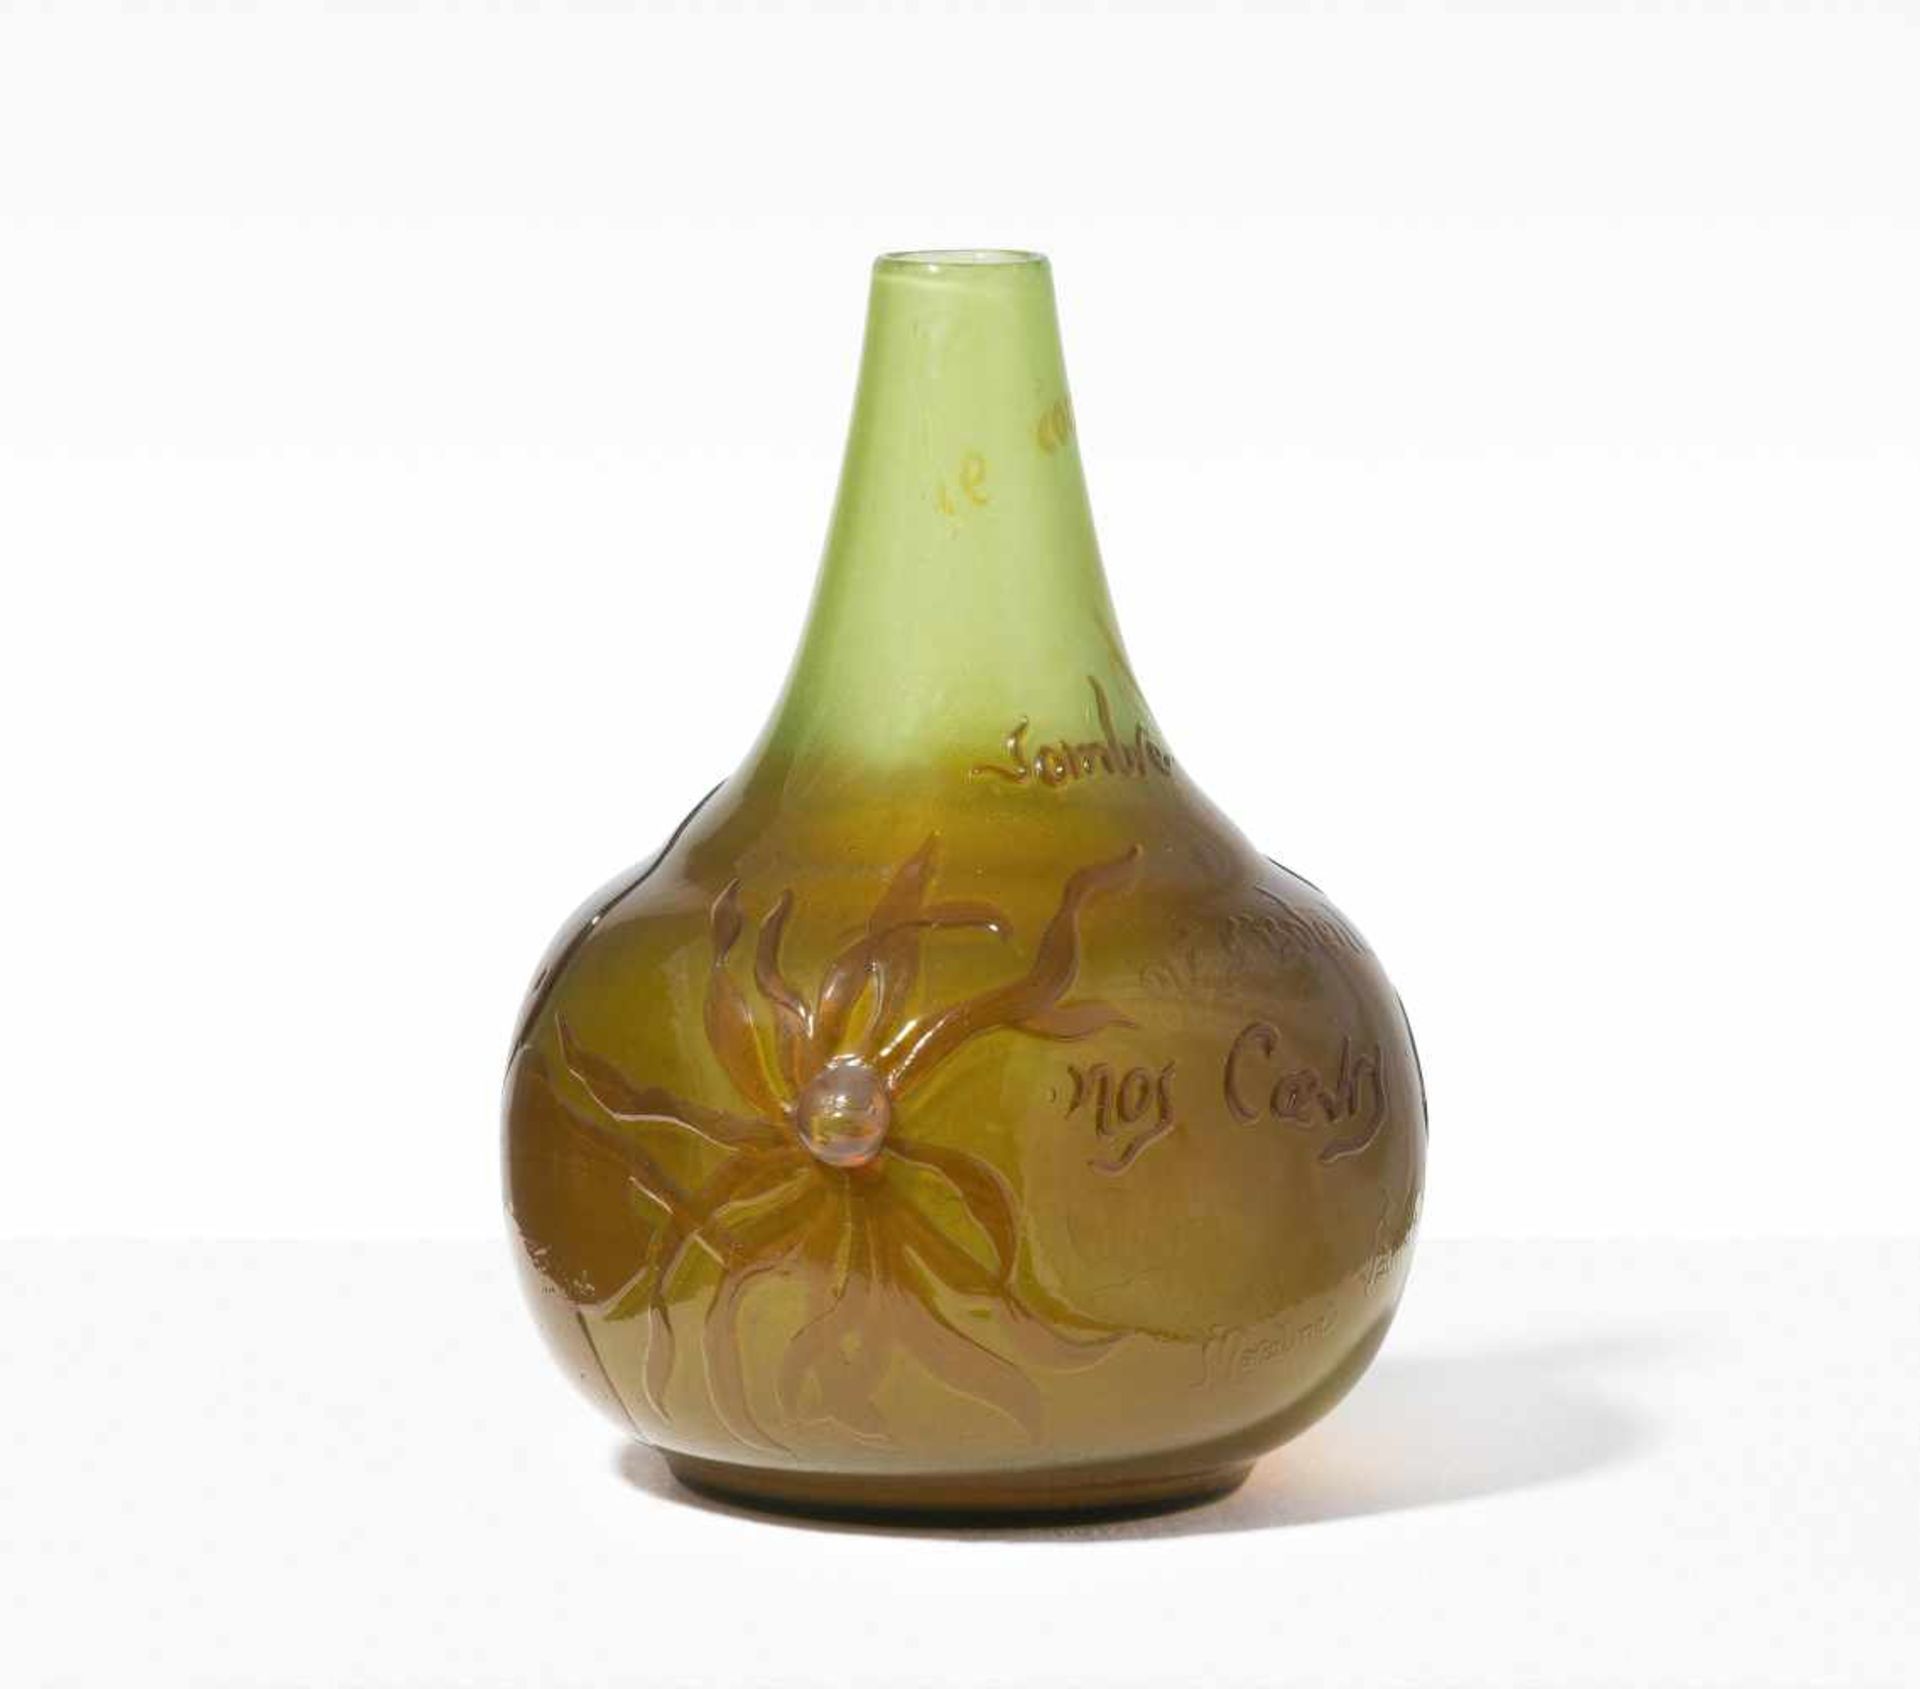 Emile GalléNancy, um 1900. Vase. Farbloses Glas, mit hellgrünen und hellbraunen